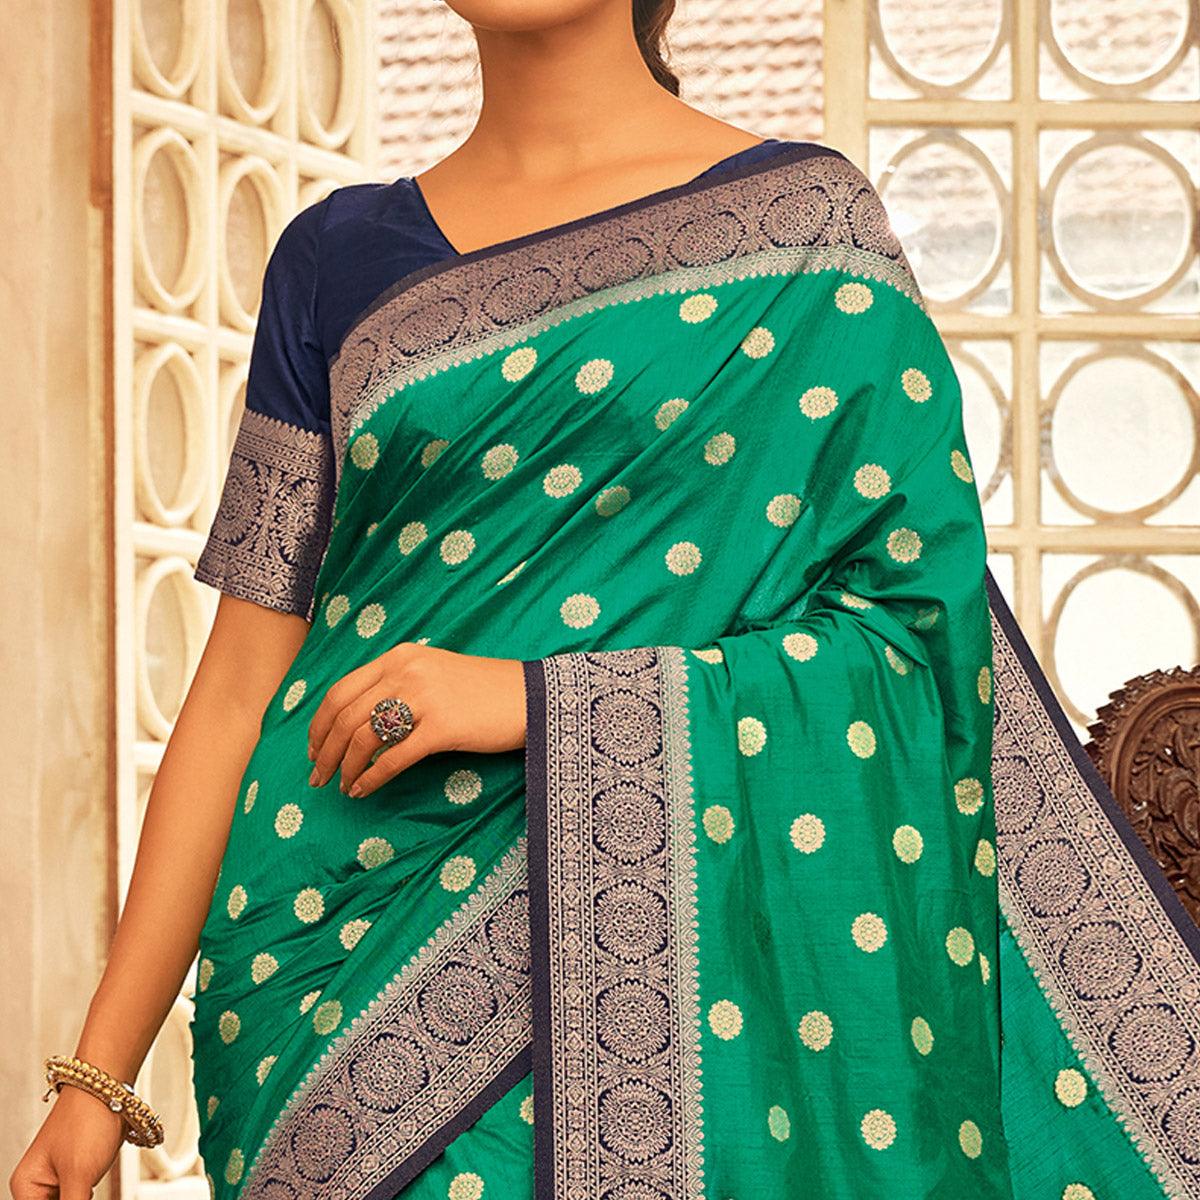 Flamboyant Green Colored Festive Wear Woven Chanderi Cotton Saree - Peachmode